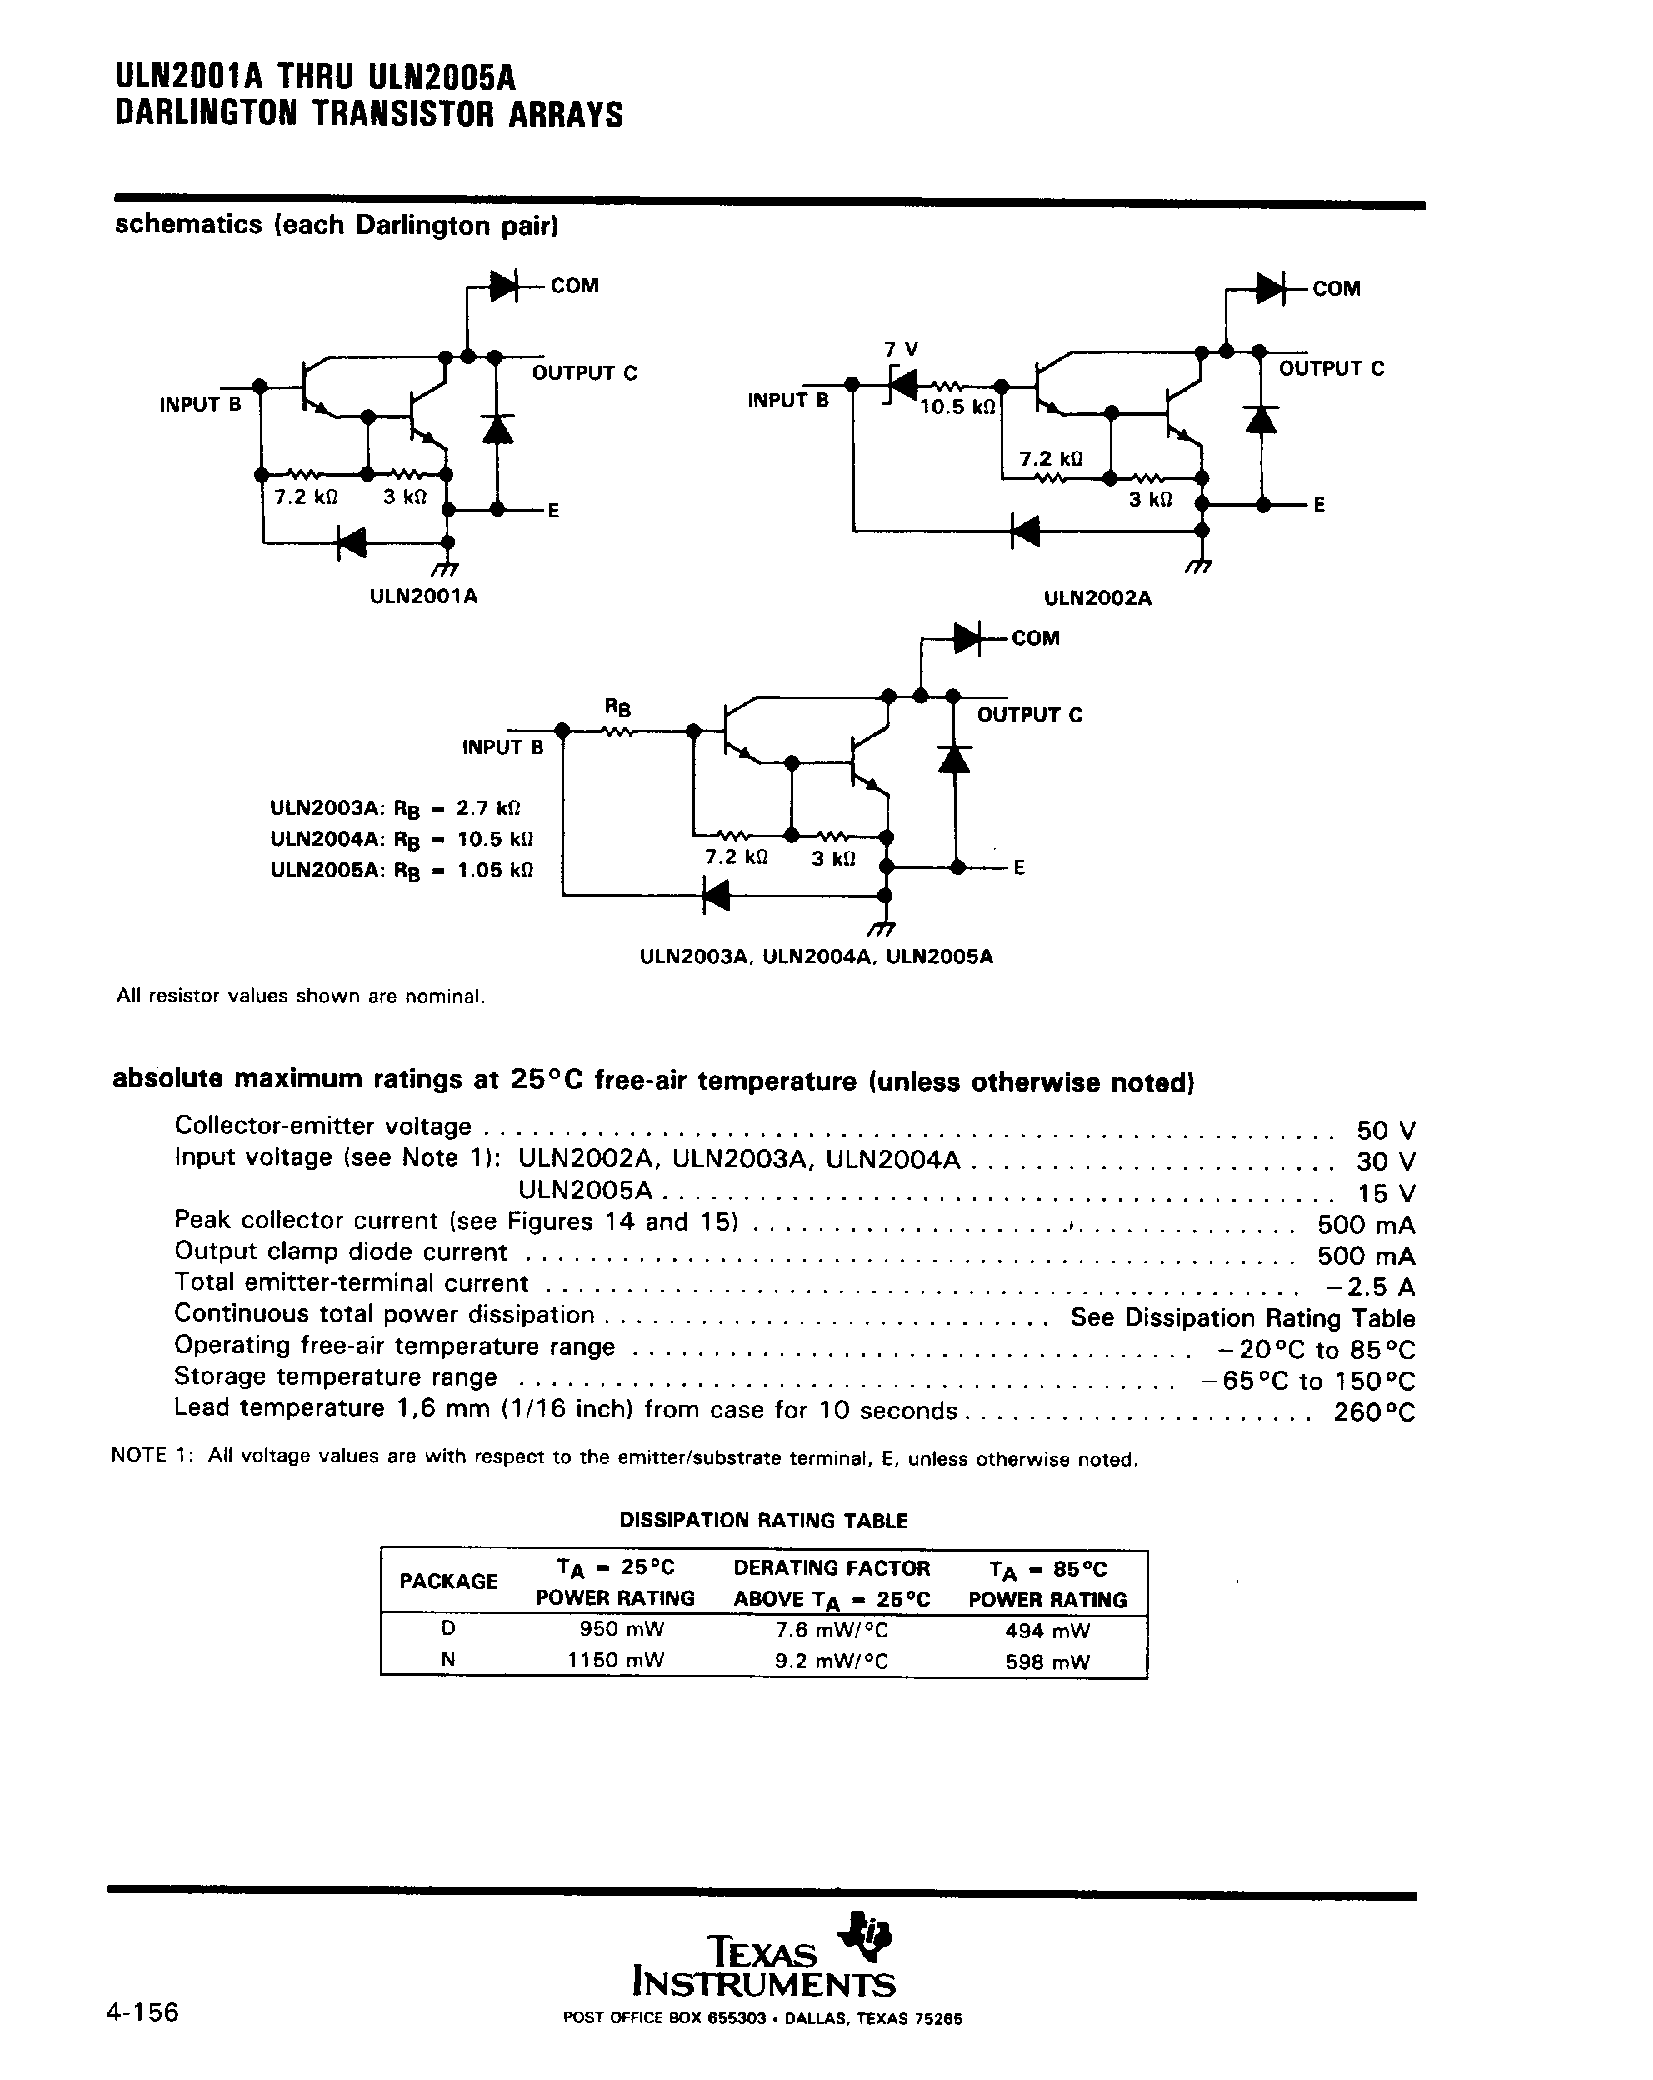 Даташит ULN2005A - (ULN2001A - ULN2005A) Darlington Transistor Arrays страница 2